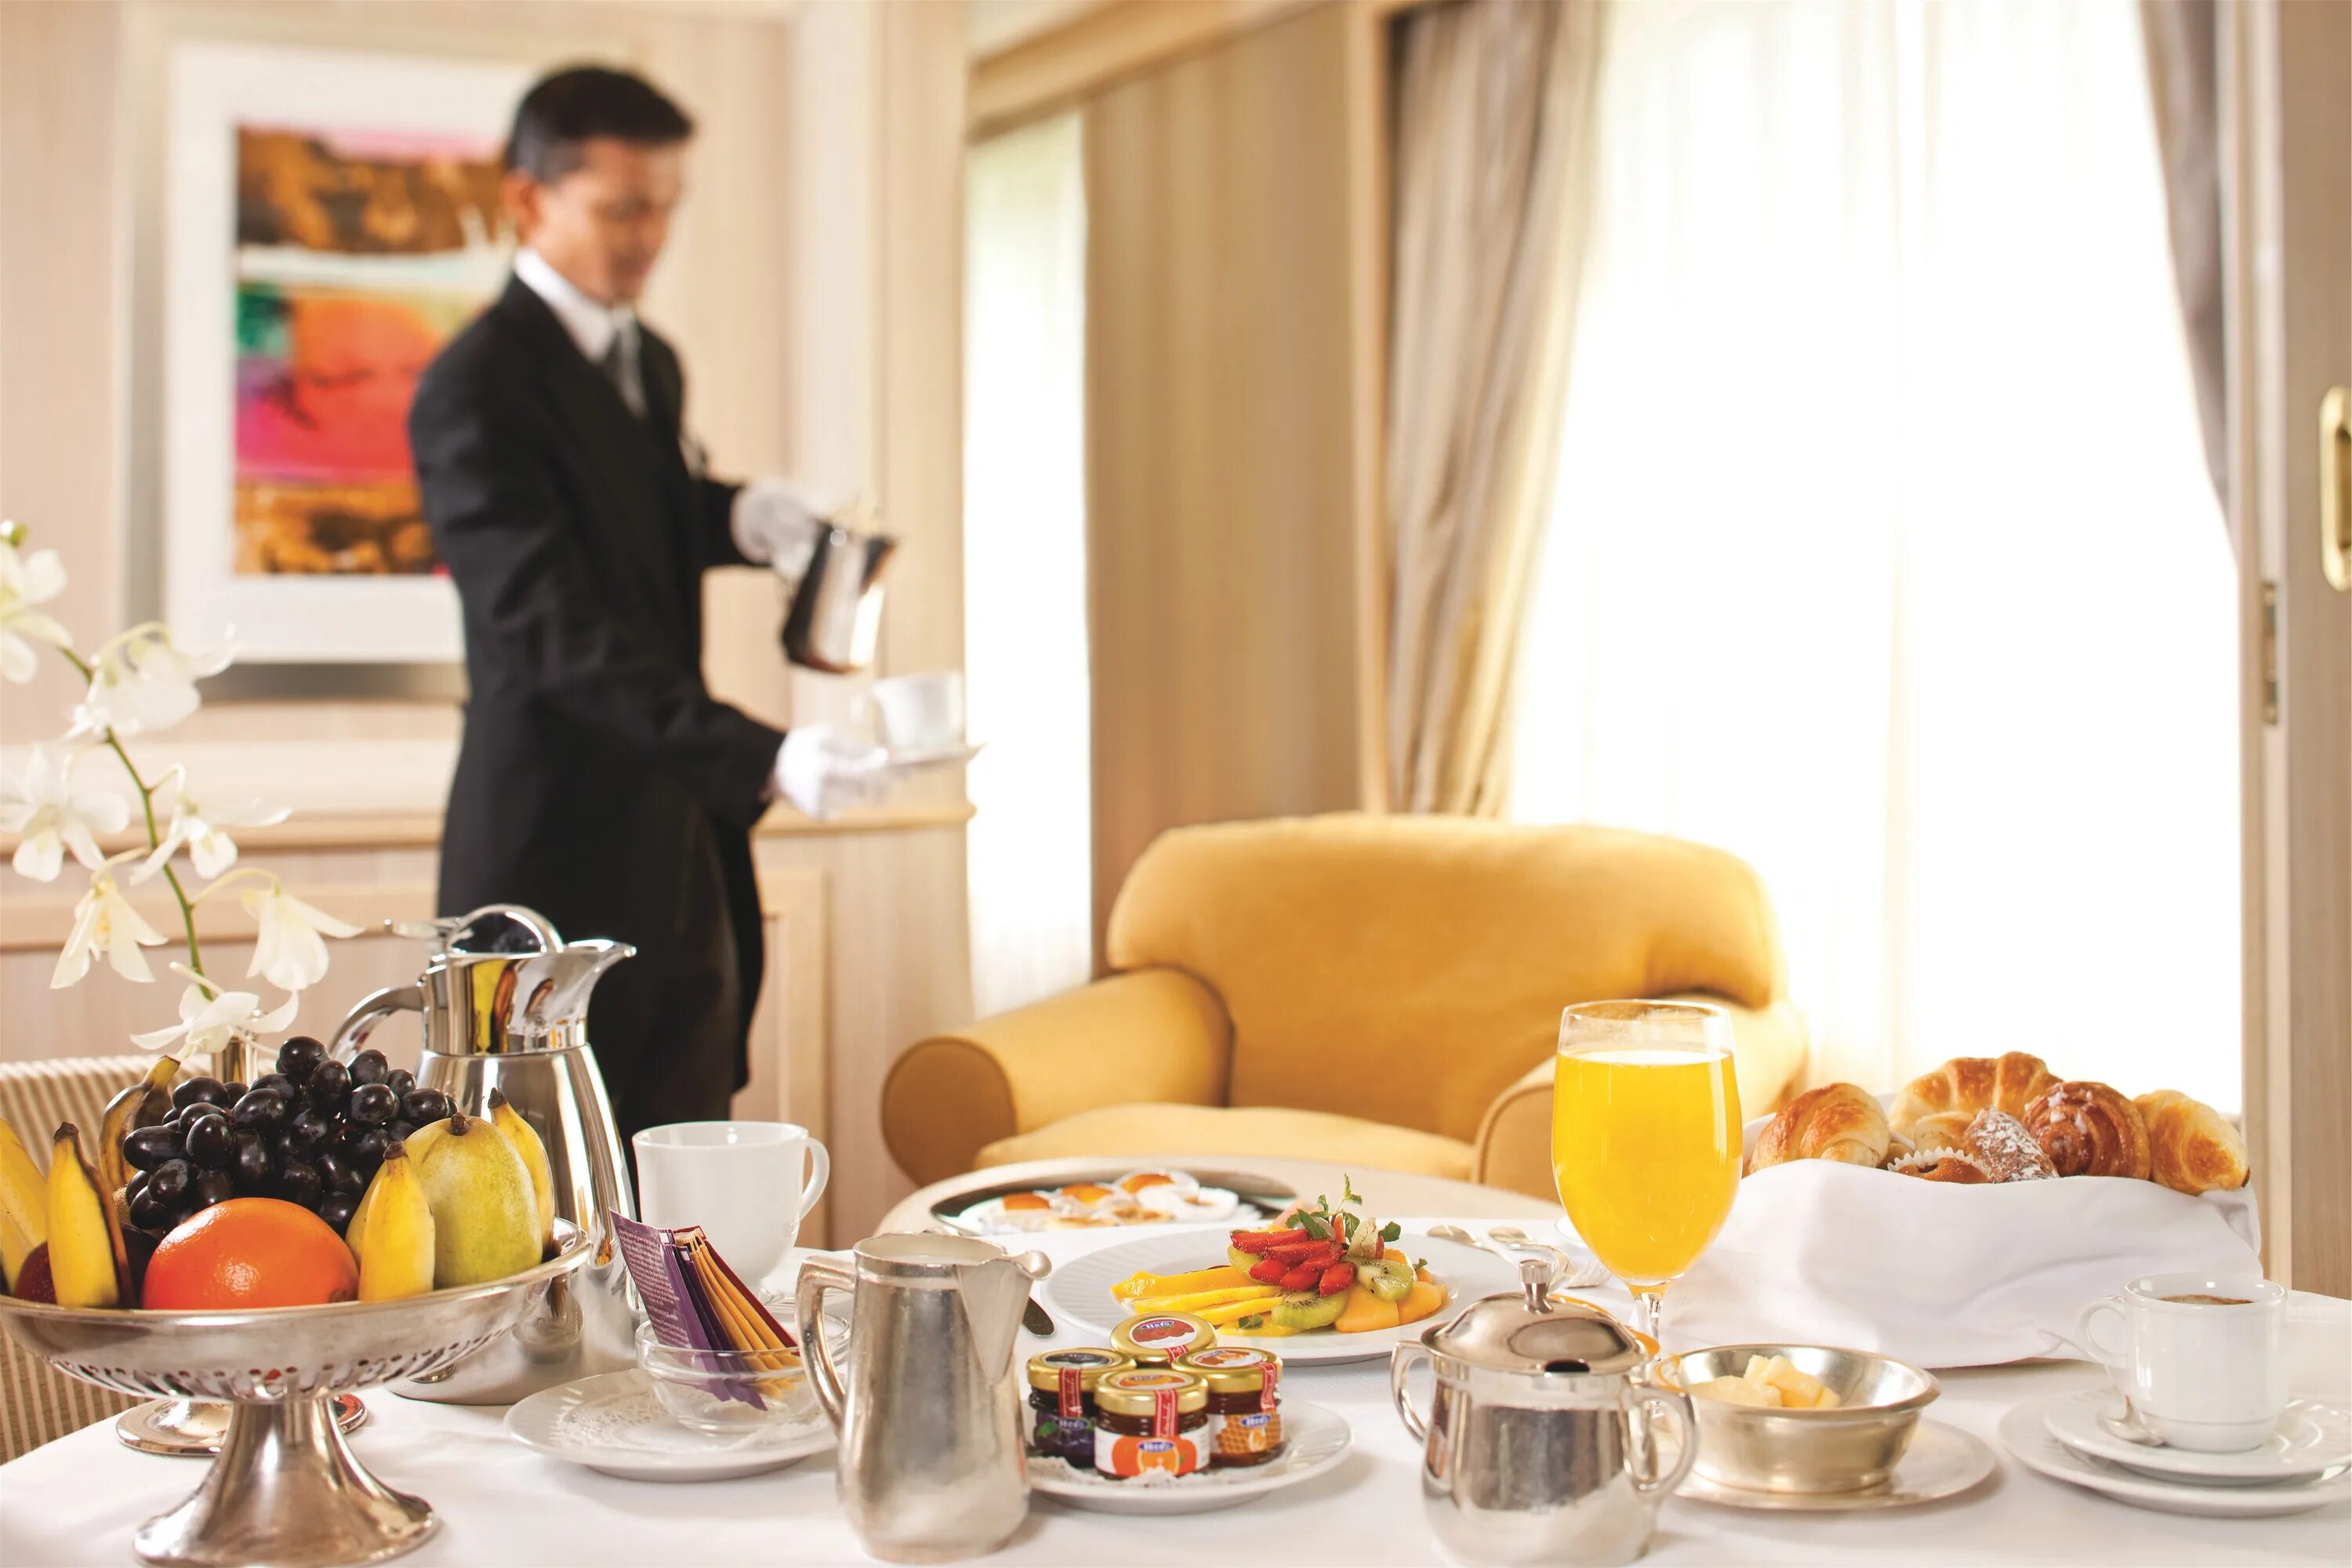 Рум сервис в гостинице. Завтрак в отеле рум сервис. Завтрак в гостинице. Завтрак в номере отеля. Опоздавшие ужины